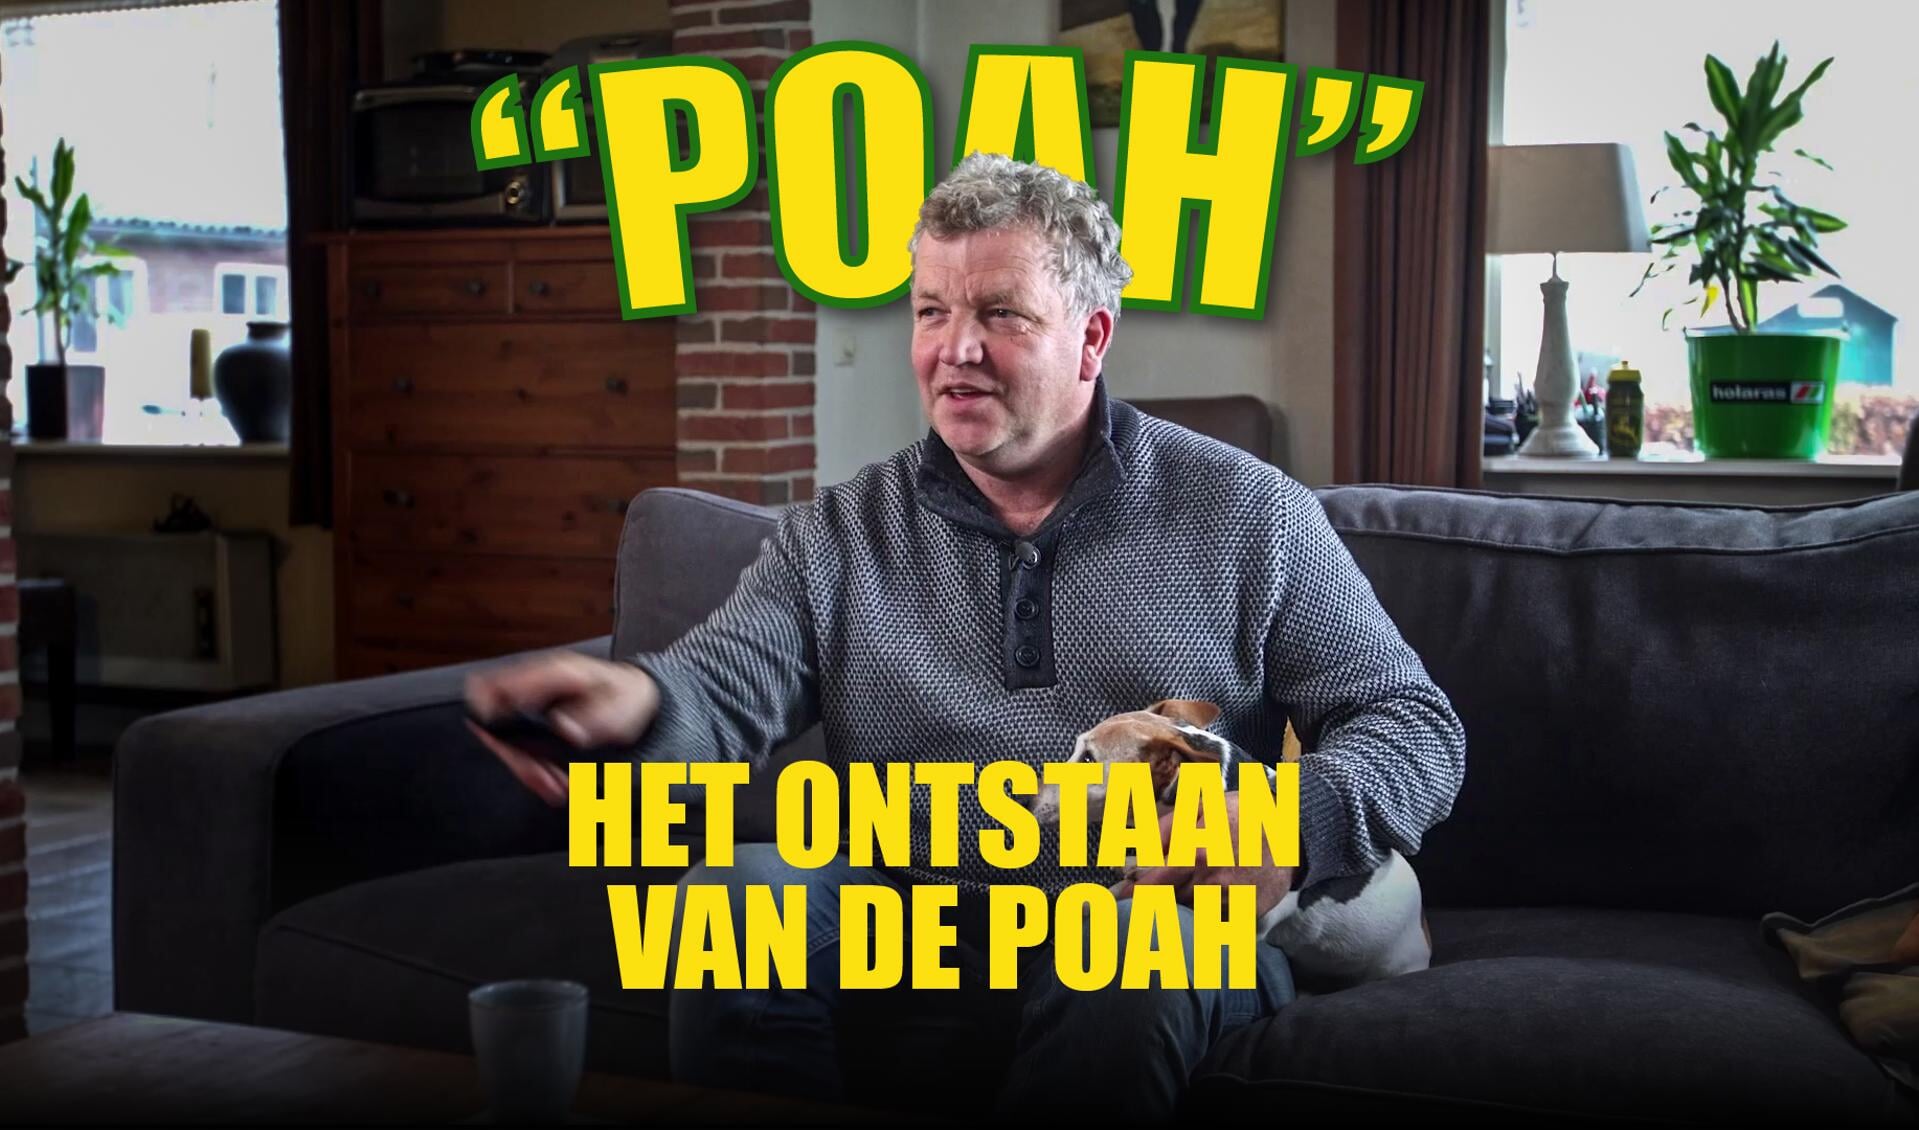 Gerrit Vossers en hond, in 'Poah', het verhaal achter 'het ontstaan van de poah'. Foto: IetsAnders.nl 